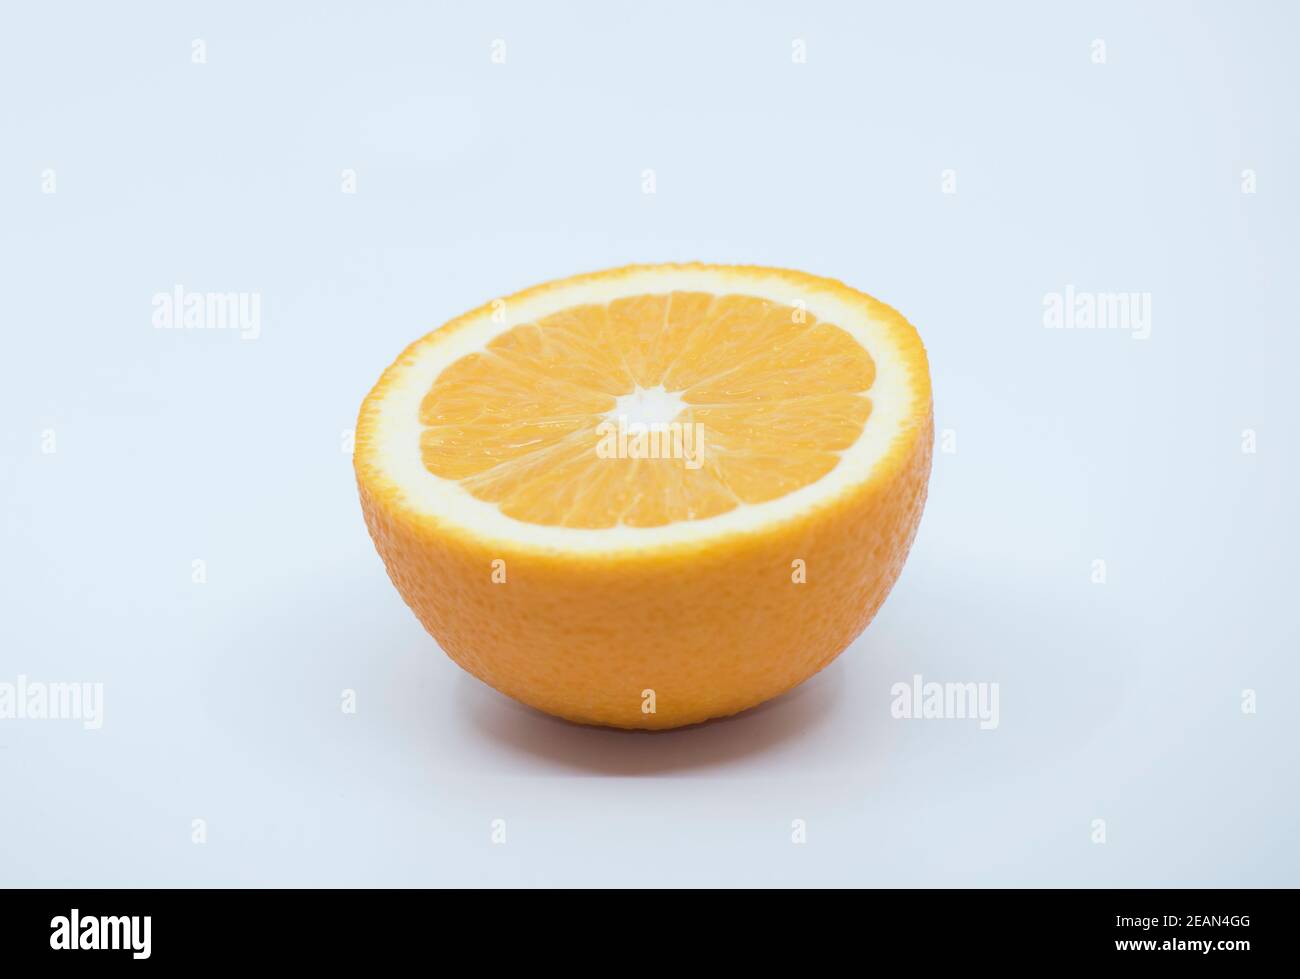 ripe and juicy orange fruits Stock Photo